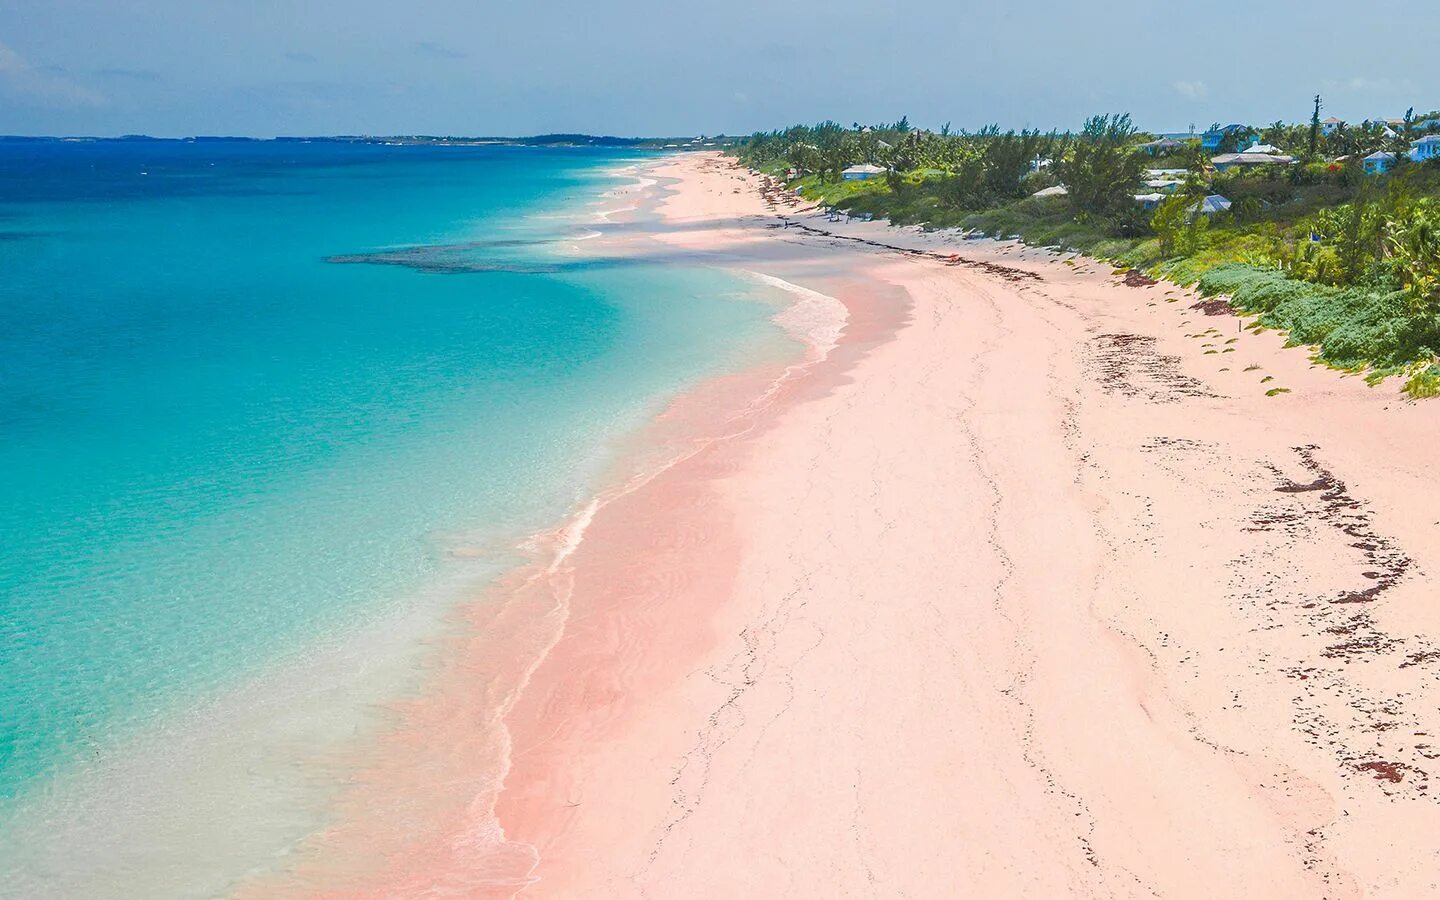 Harbor island. Розовый пляж. Остров Харбор, Багамы. Пинк-Сэндс-Бич, Багамские острова. Pink Sands Beach Багамские острова. Пляж Пинк-Сэнд-Бич, Харбор, Багамские острова.